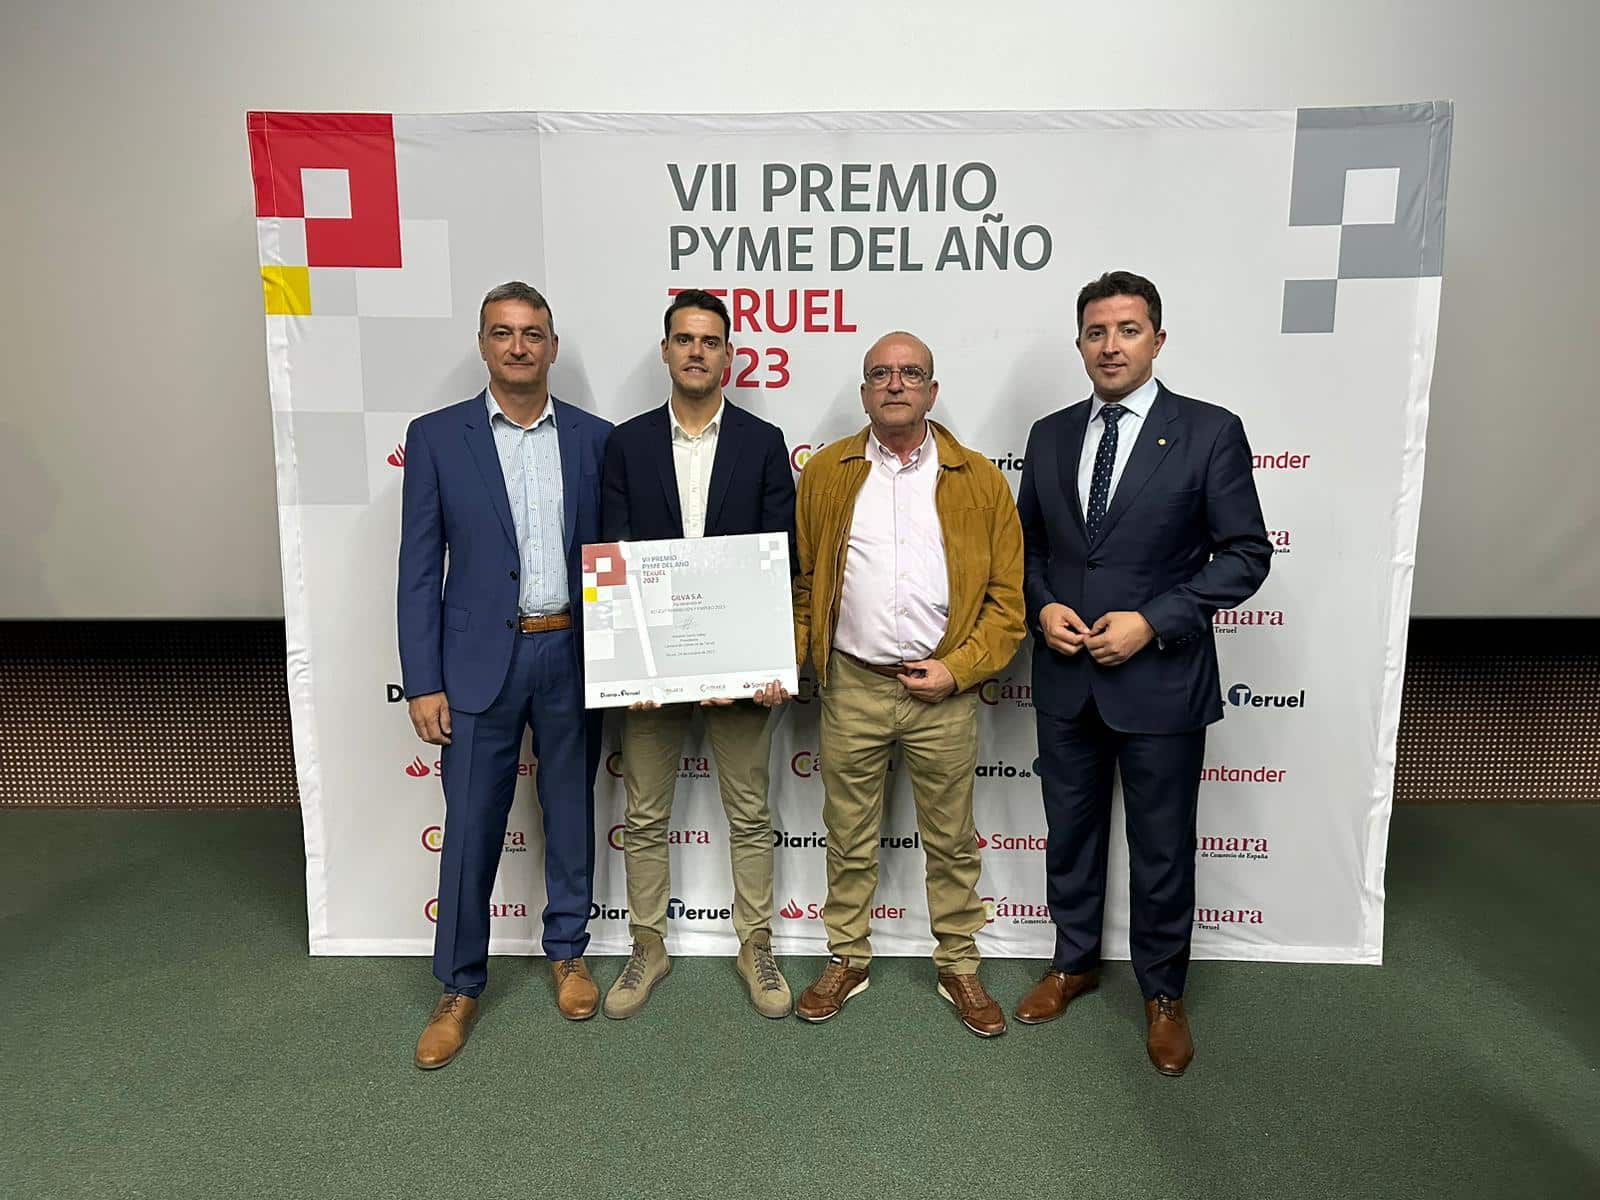 Gilva S.A. Recibe el Premio "Formación y Empleo" en la VII Edición del Premio Pyme del Año Teruel 2023